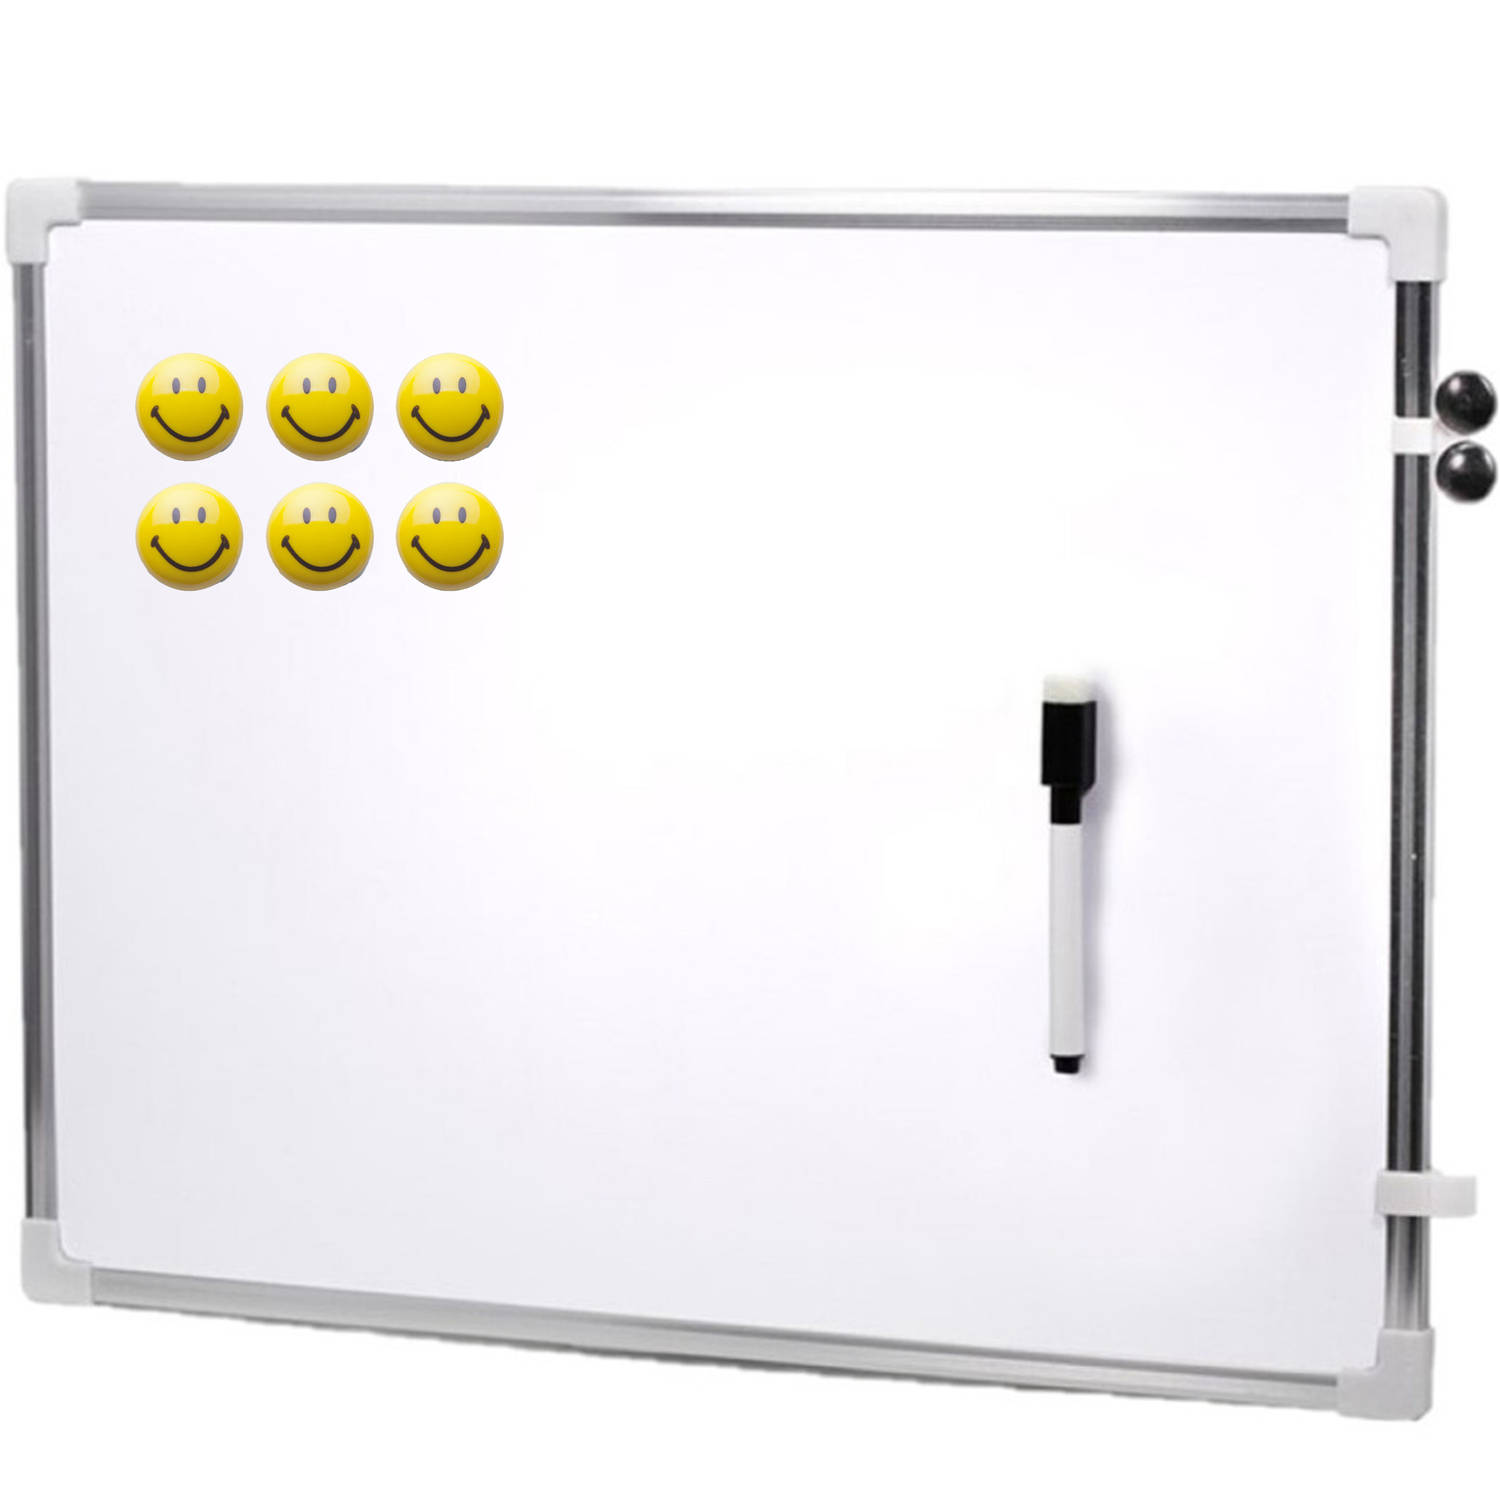 Magnetisch whiteboard met marker-smiley magneten 80 x 60 cm Whiteboards